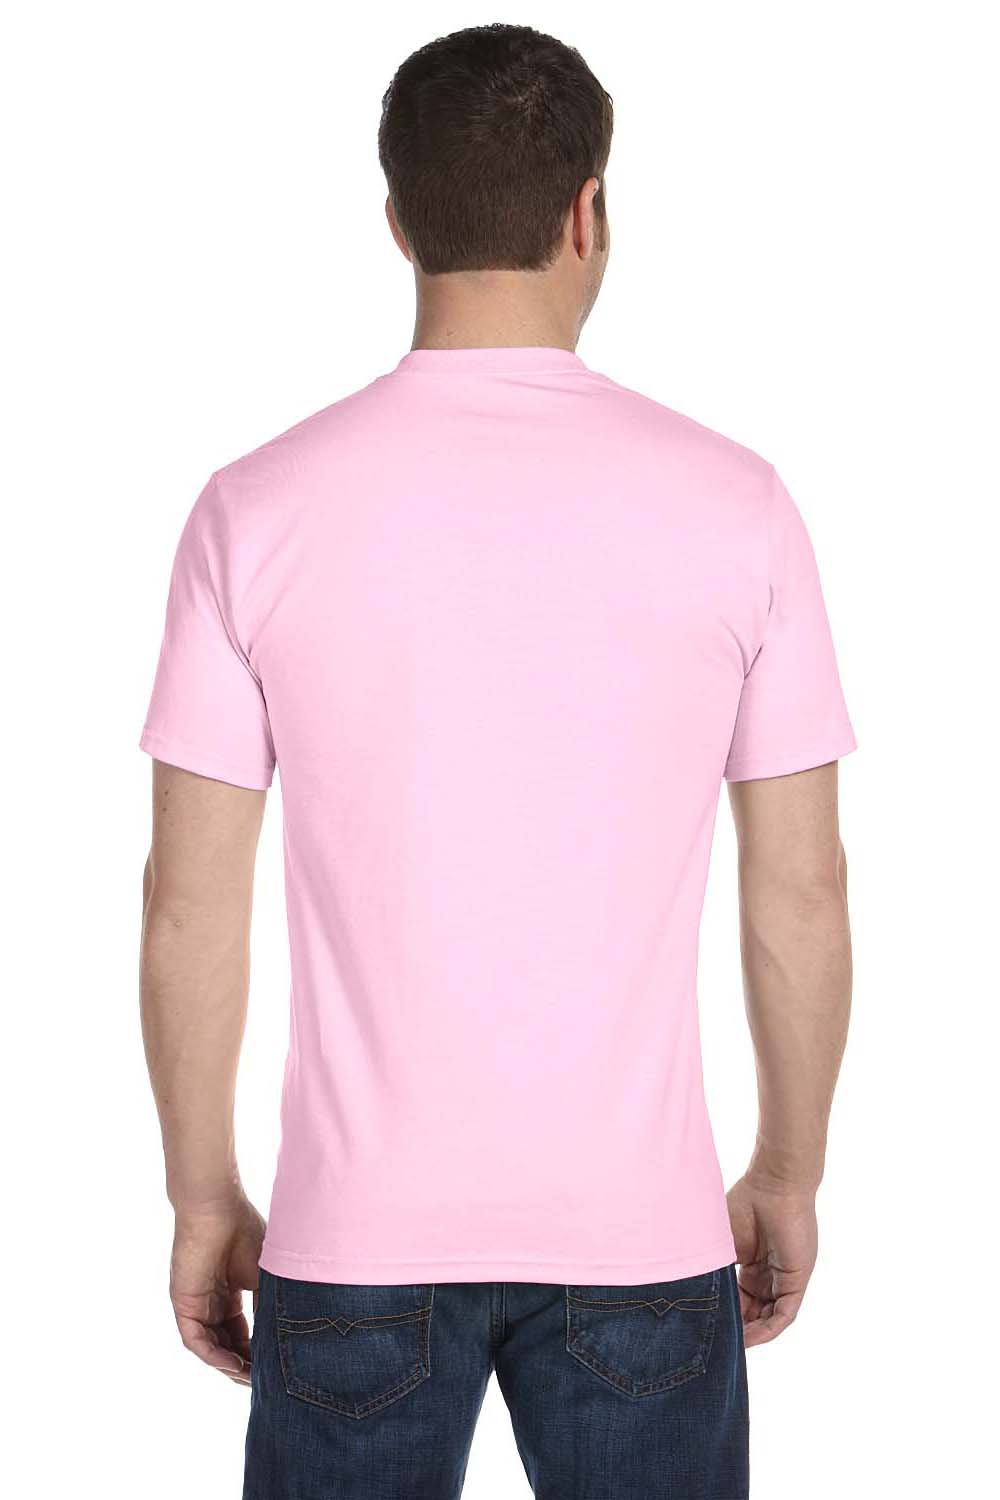 Gildan G800 Mens DryBlend Moisture Wicking Short Sleeve Crewneck T-Shirt Light Pink Back